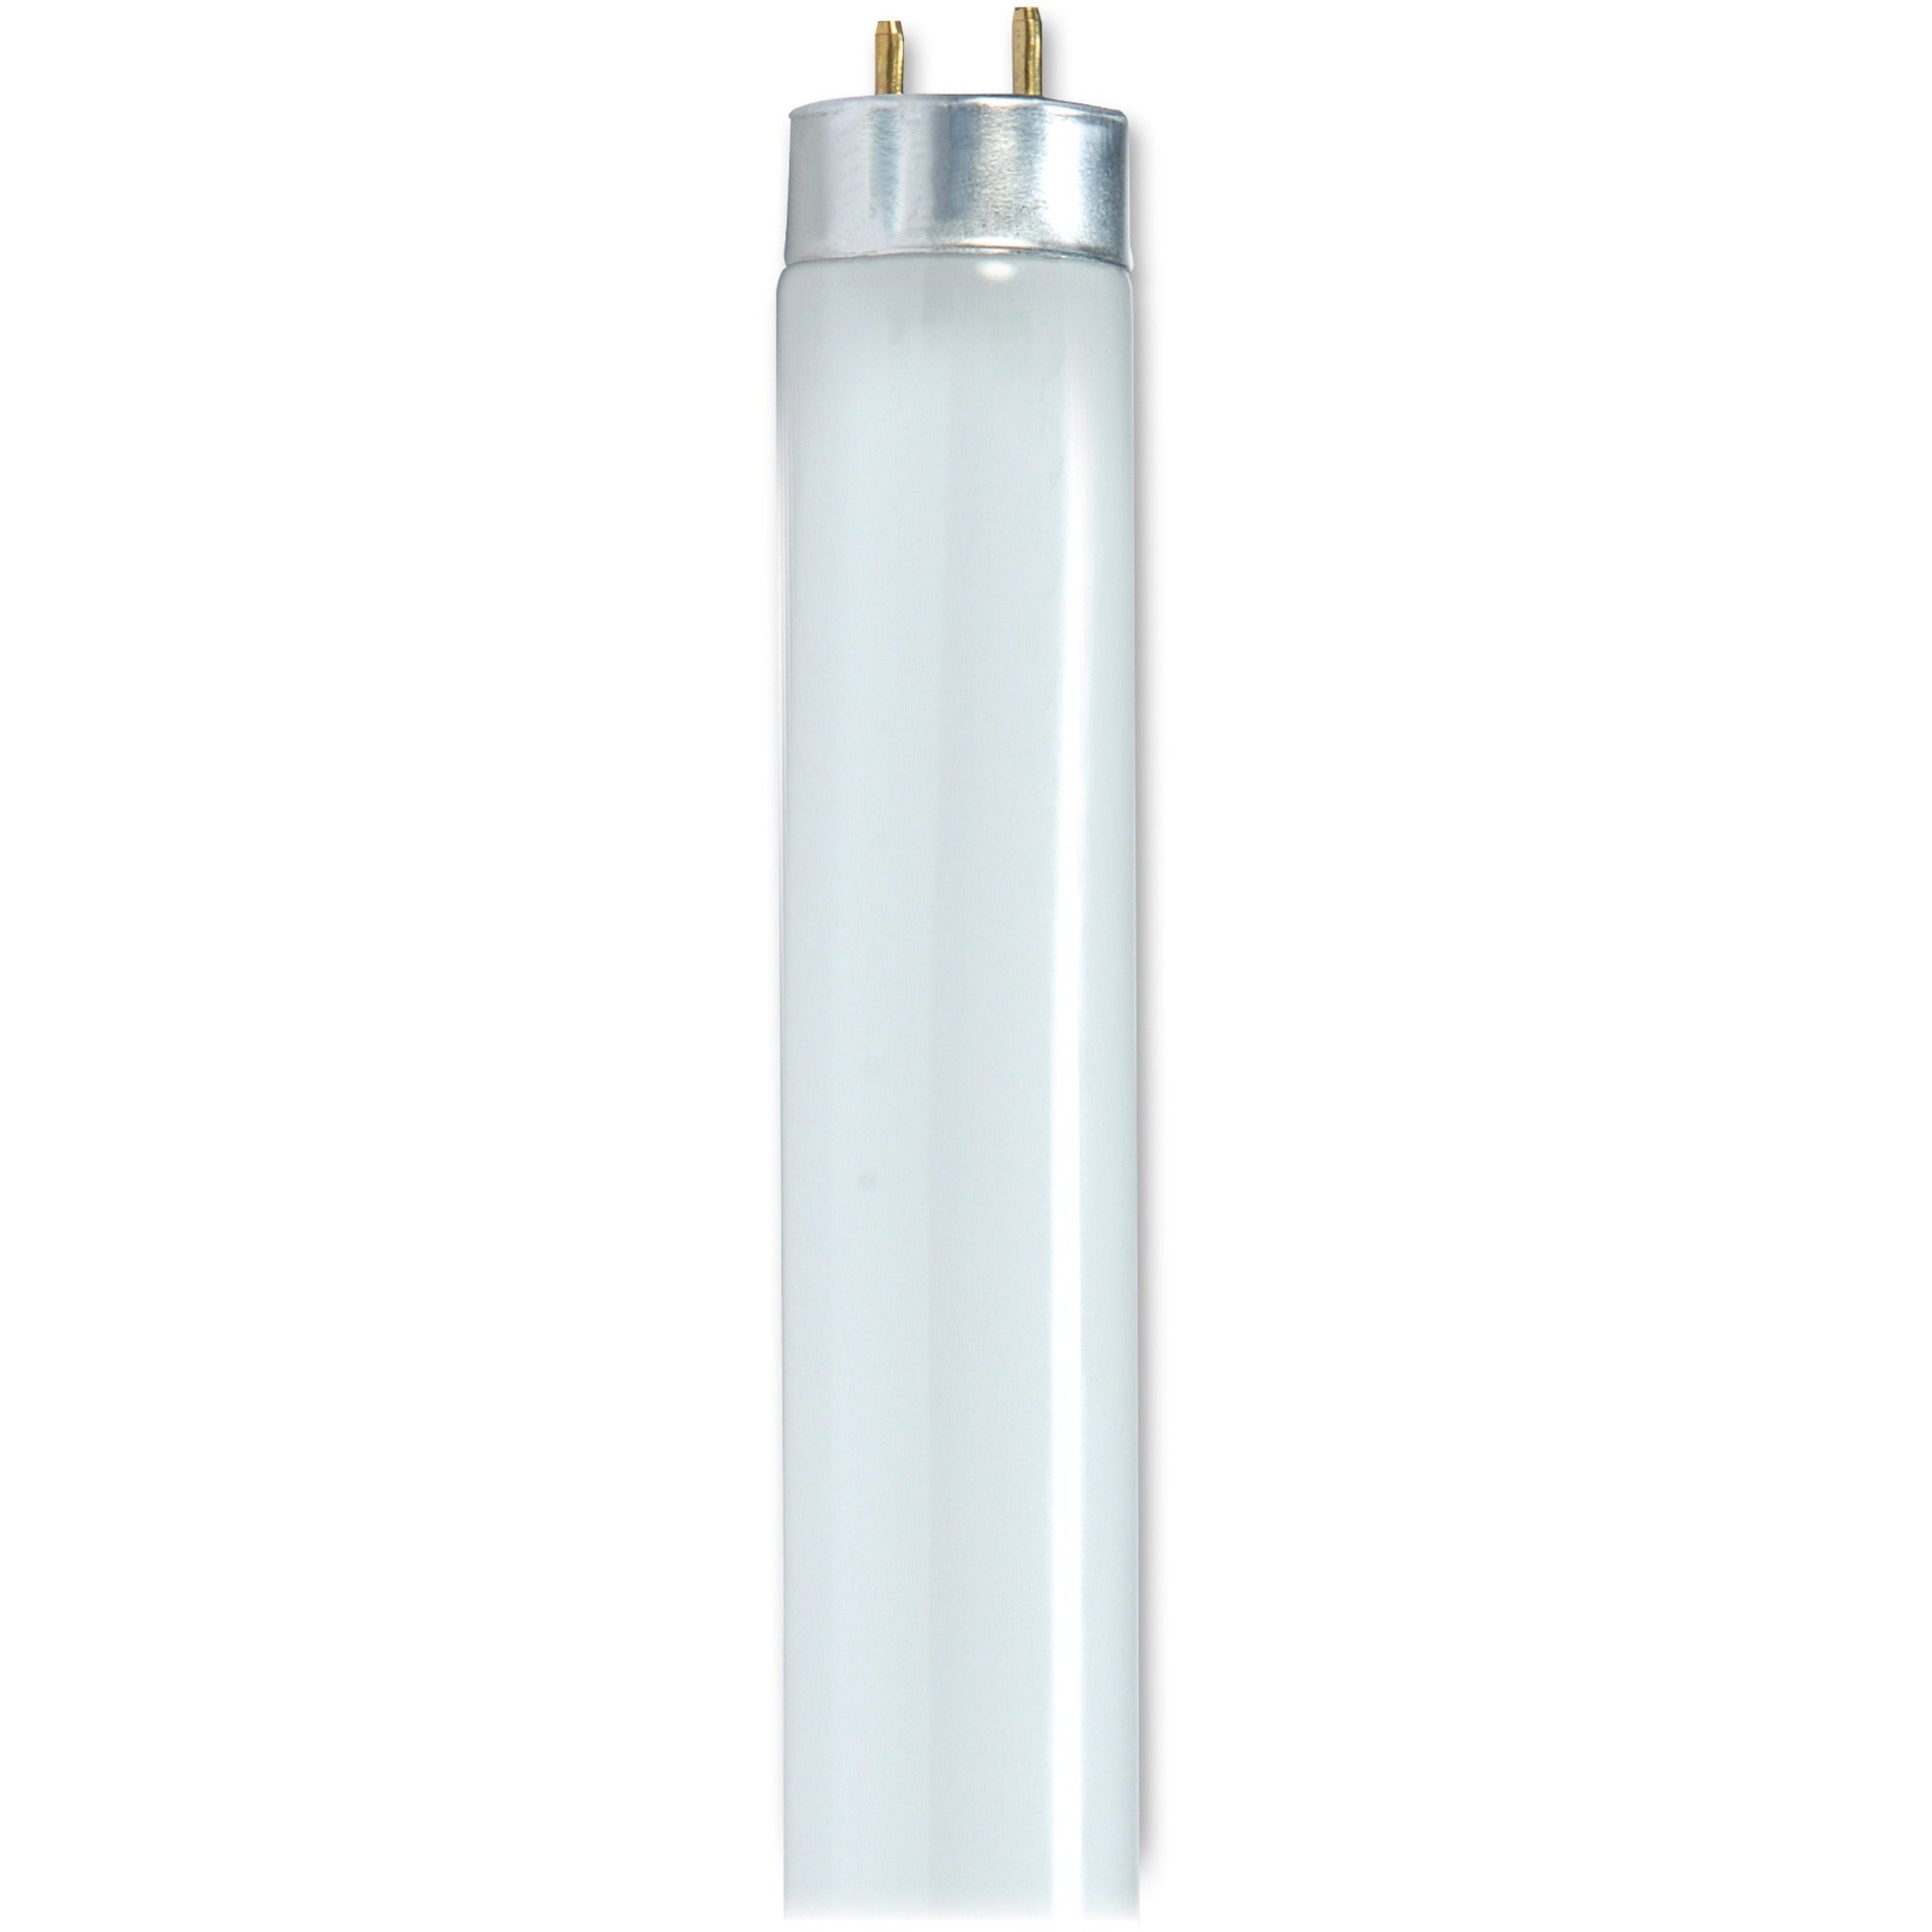 Satco 32-watt T8 Fluorescent Bulbs - 32 W - 120 V AC - T8 Size - Cool White Light Color - G13 Base - 24000 Hour - 6920.3degF (3826.8degC) Color Temperature - 85 CRI - 30 / Carton - 